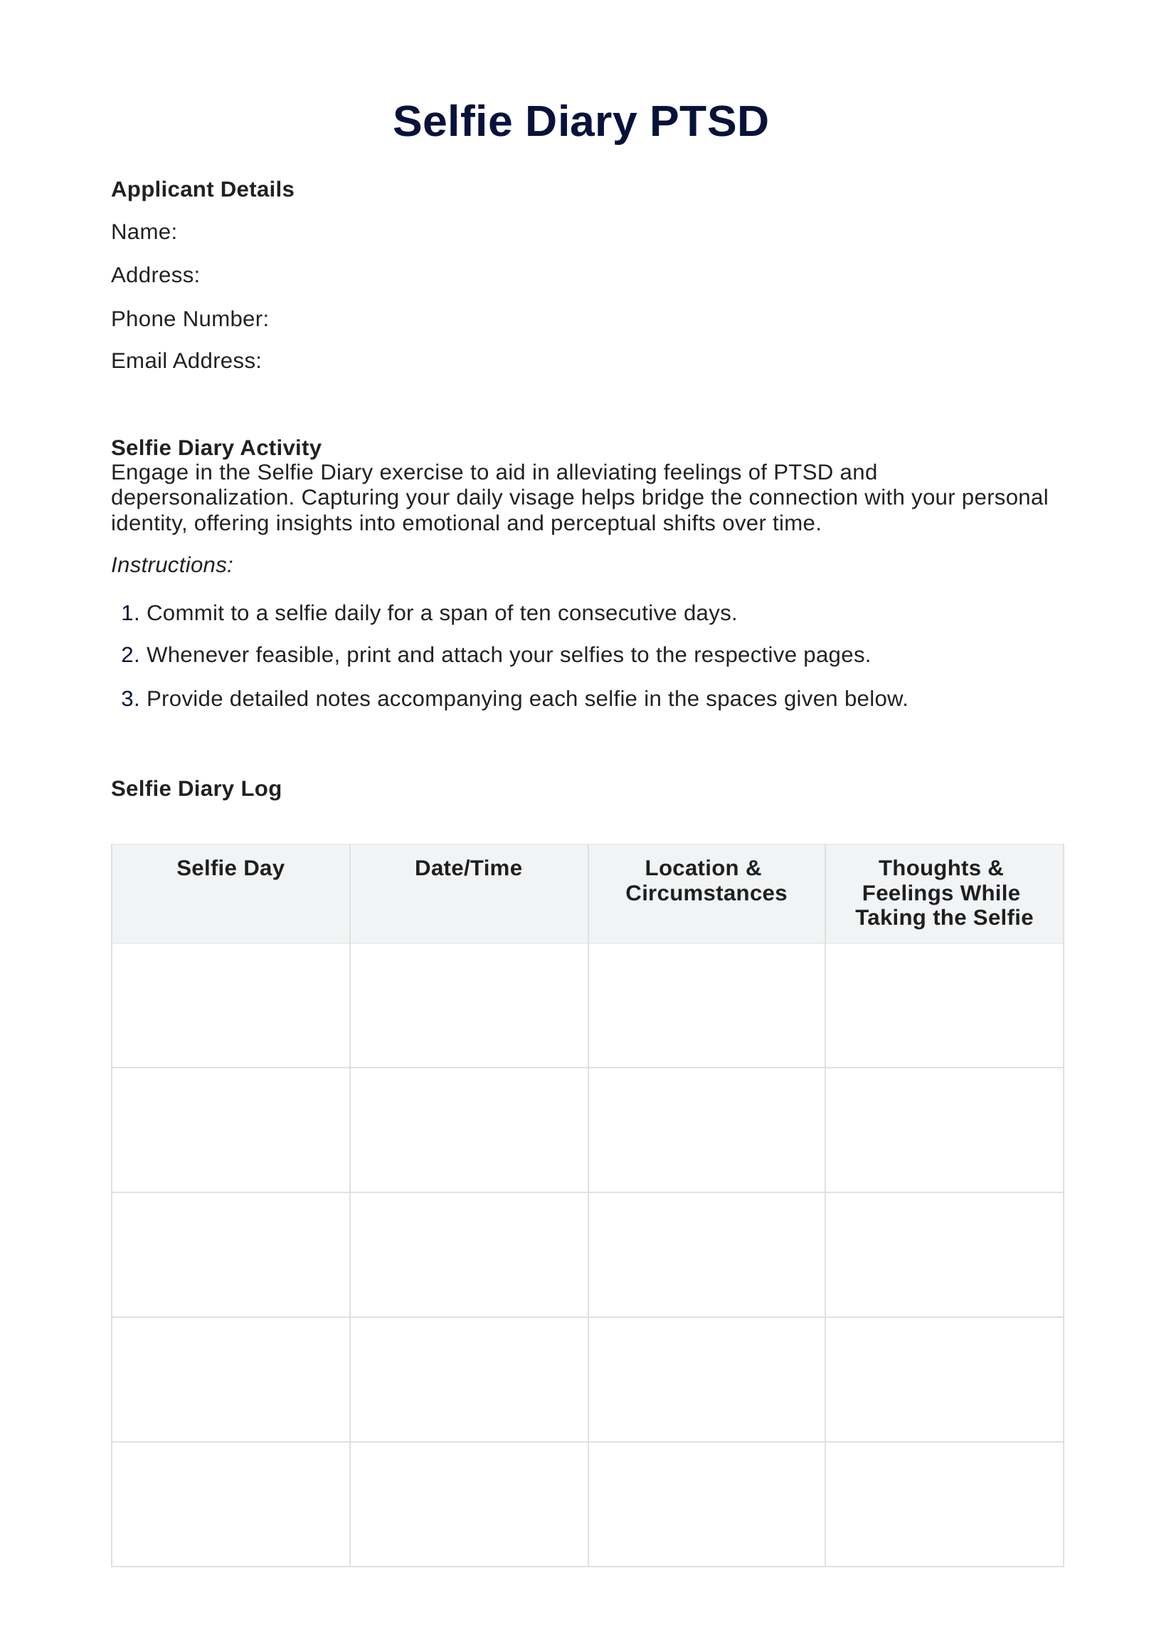 Selfie Diary PTSD Worksheet PDF Example